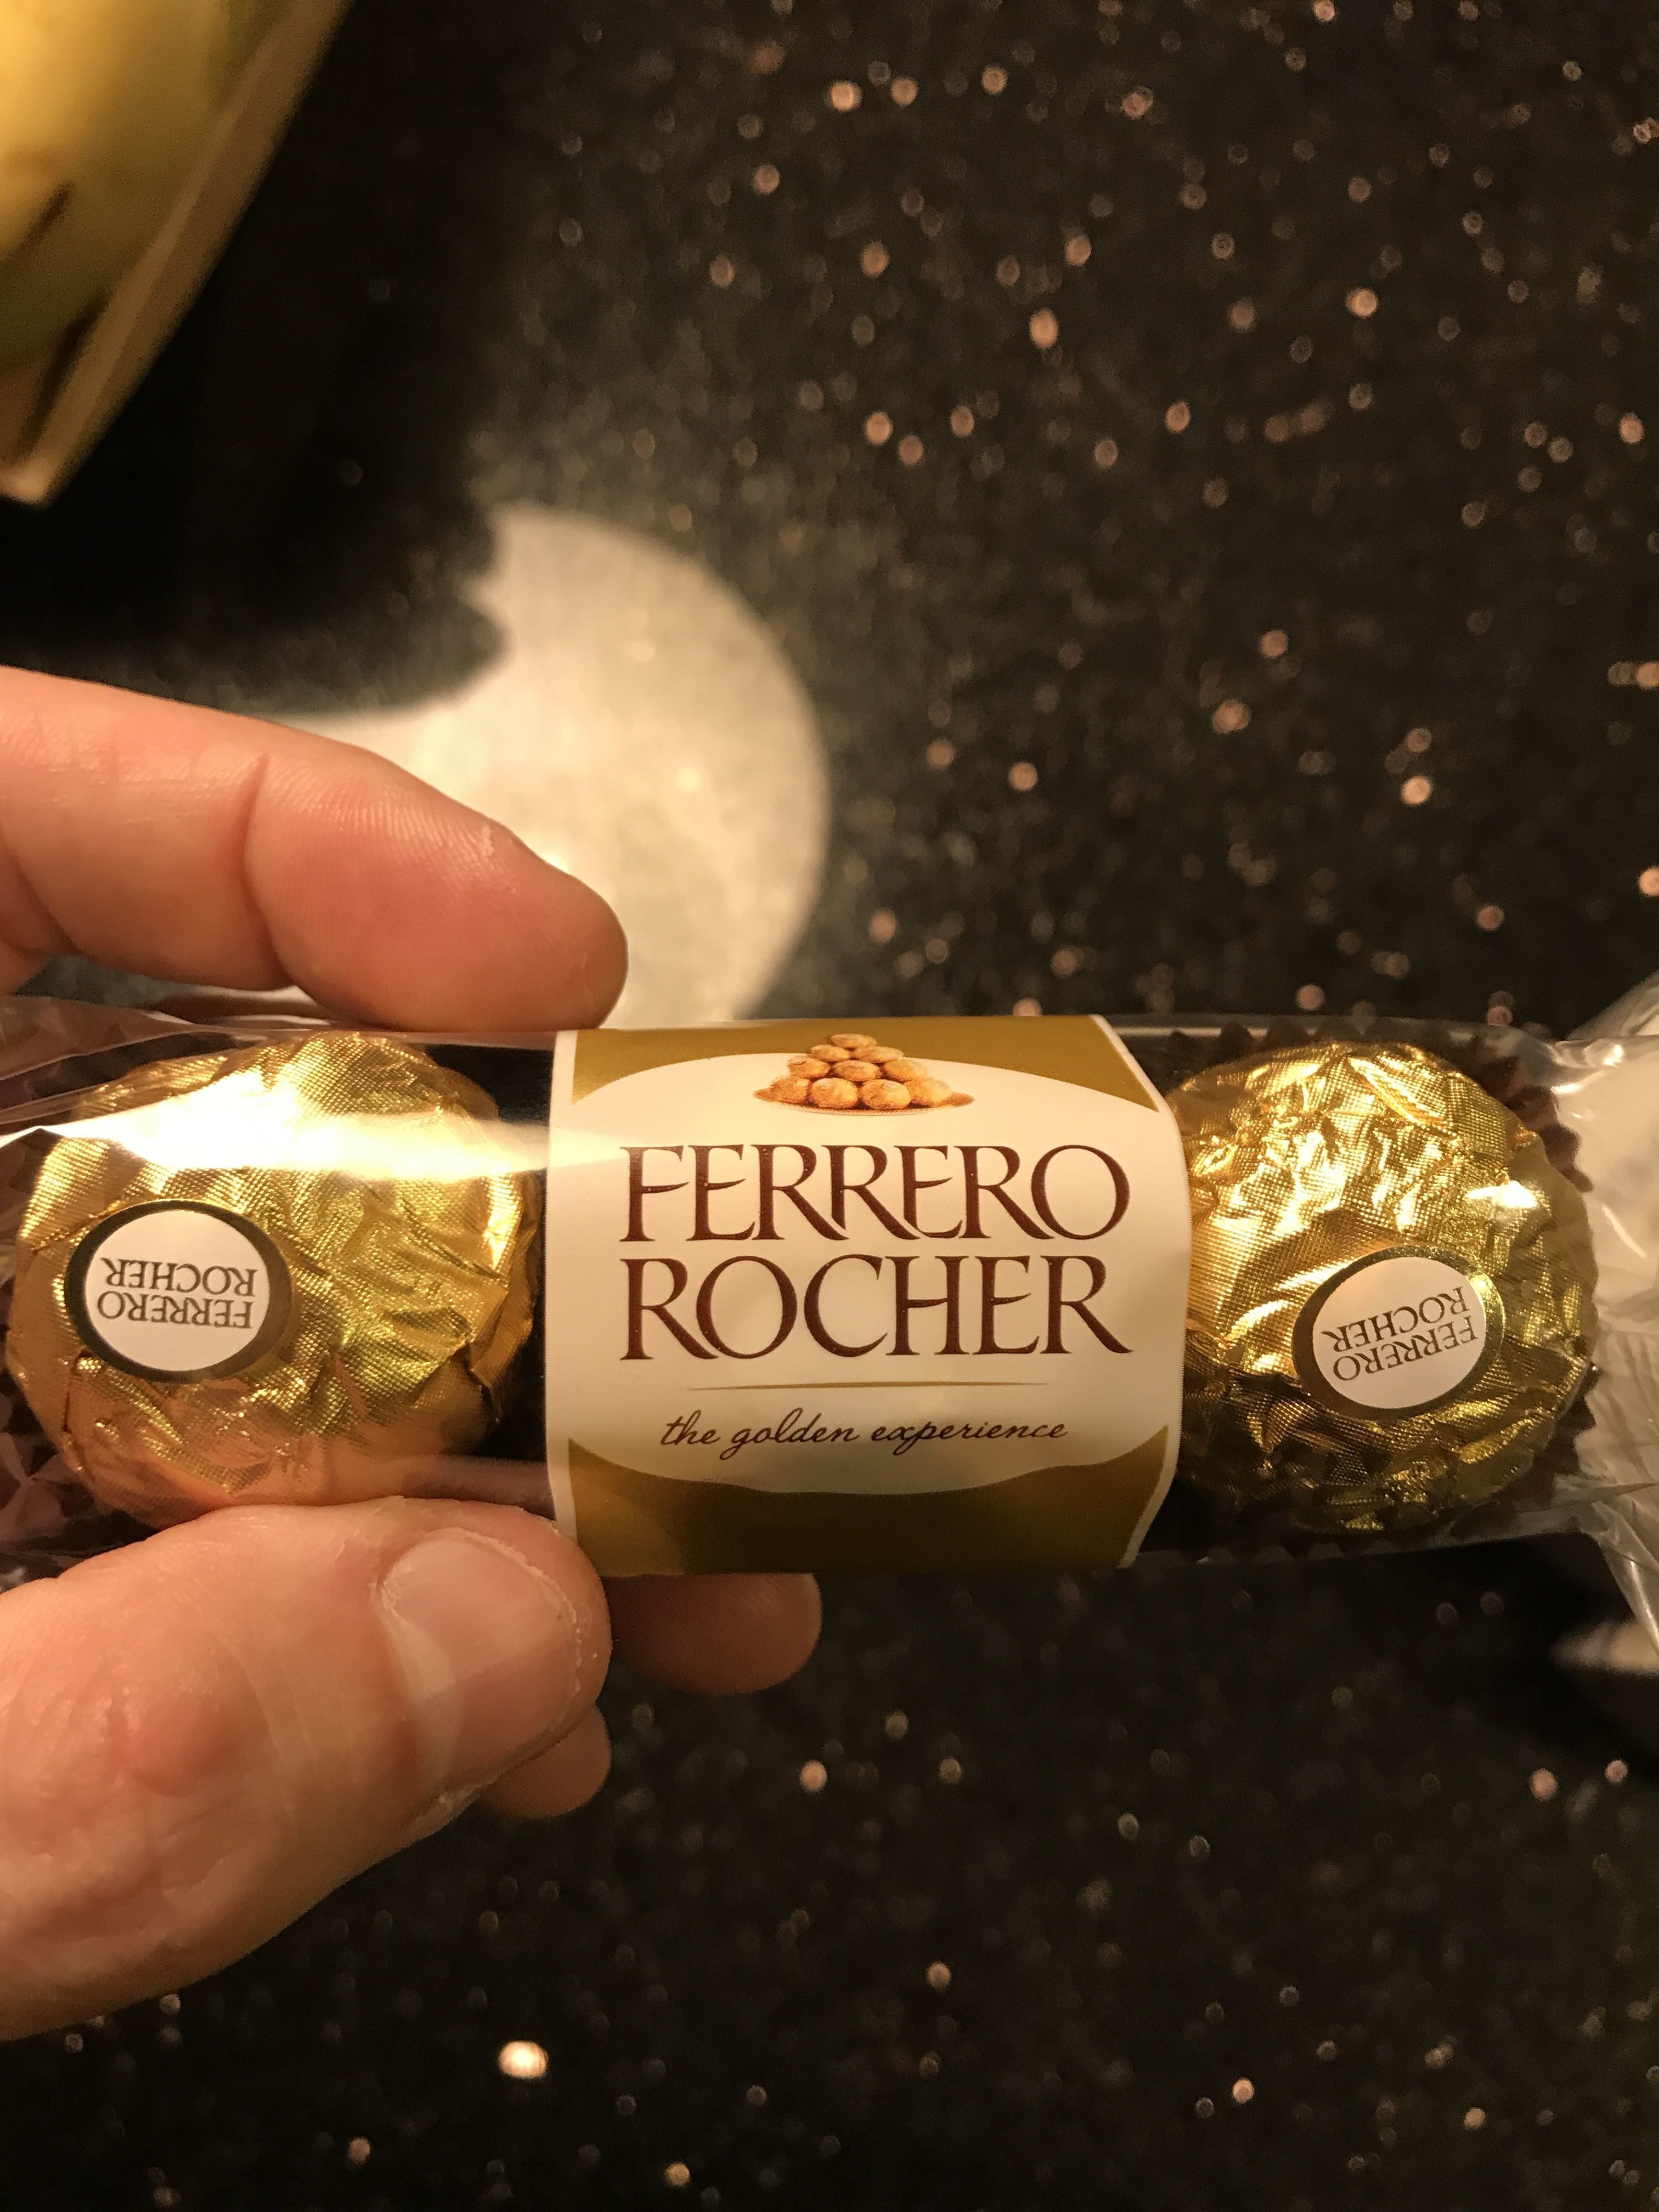 Ferrero Rocher - Product - en